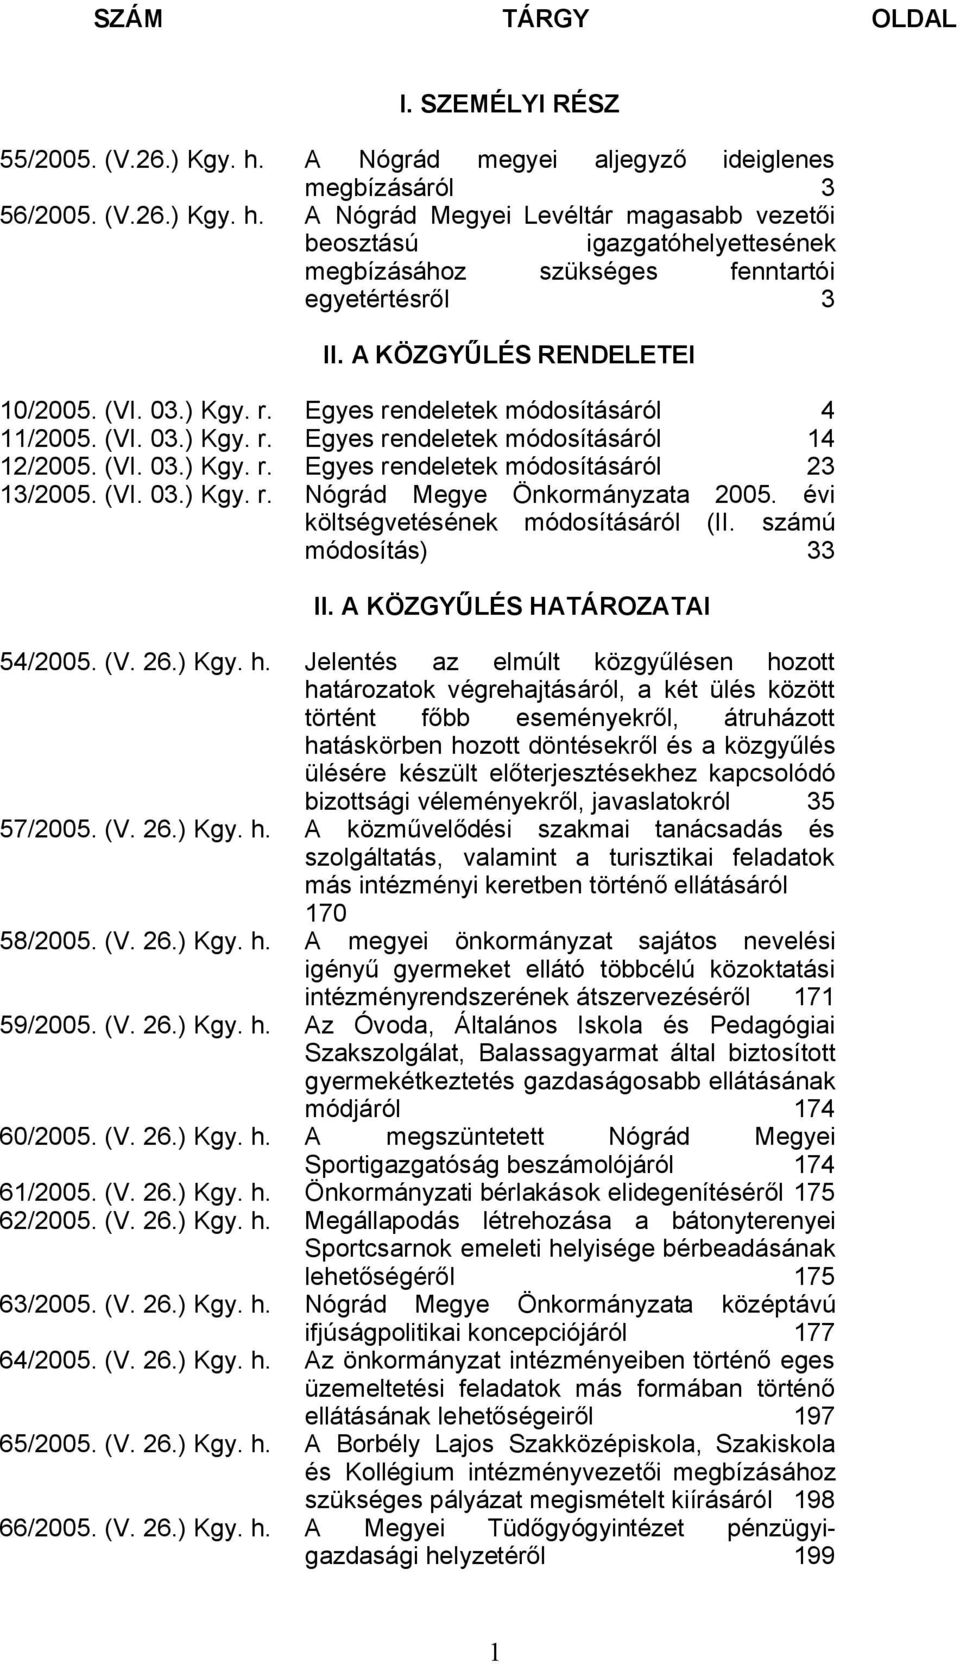 (VI. 03.) Kgy. r. Nógrád Megye Önkormányzata 2005. évi költségvetésének módosításáról (II. számú módosítás) 33 II. A KÖZGYŰLÉS HATÁROZATAI 54/2005. (V. 26.) Kgy. h.